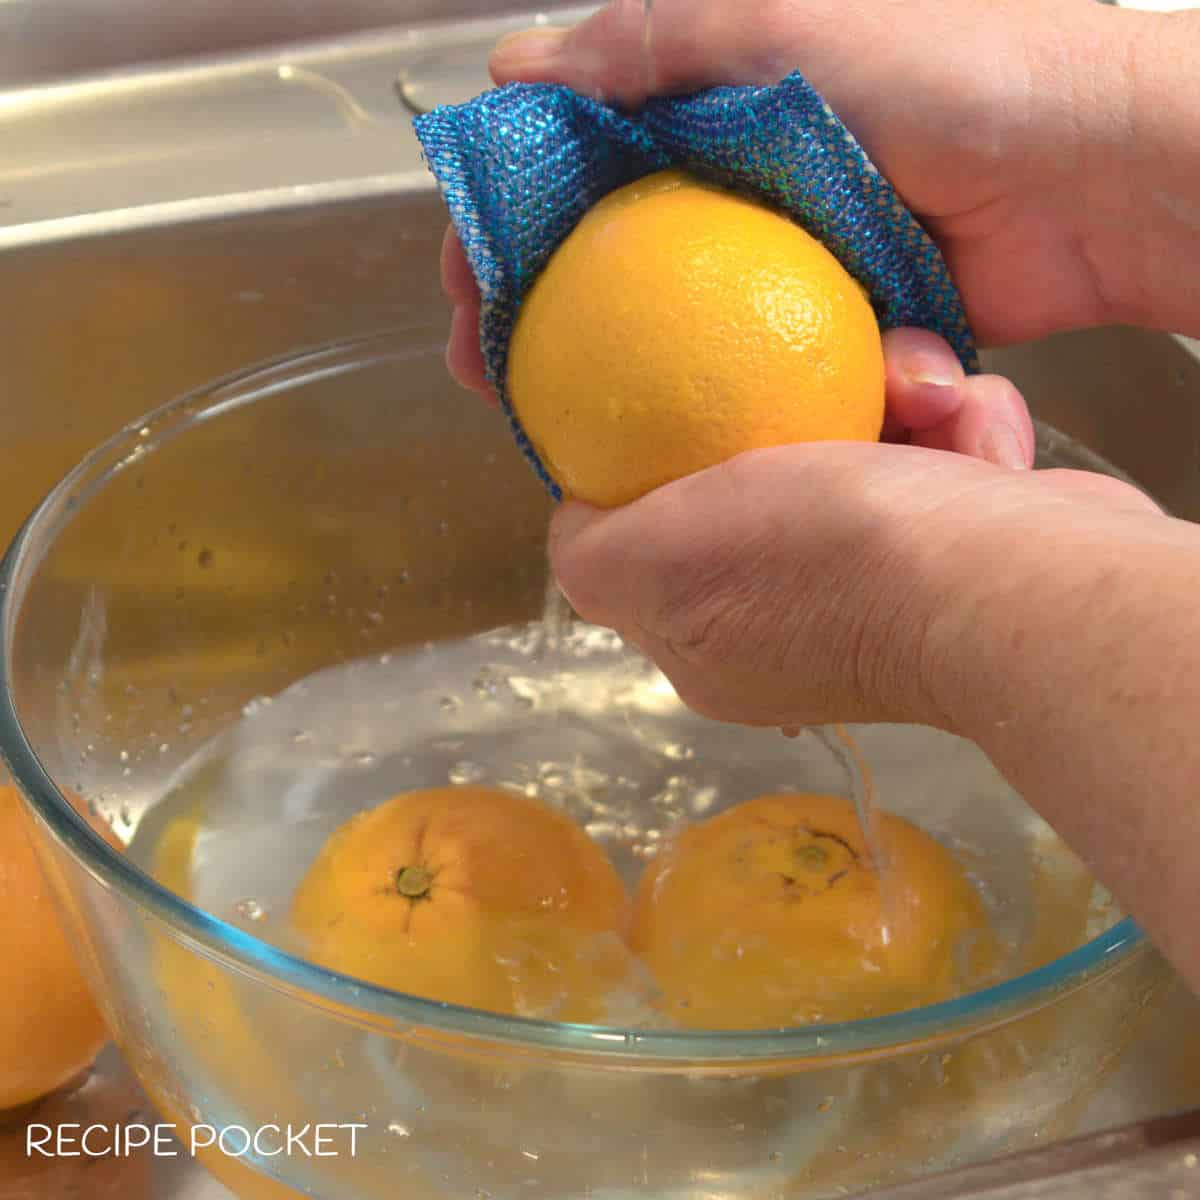 Oranges being washed under running water.